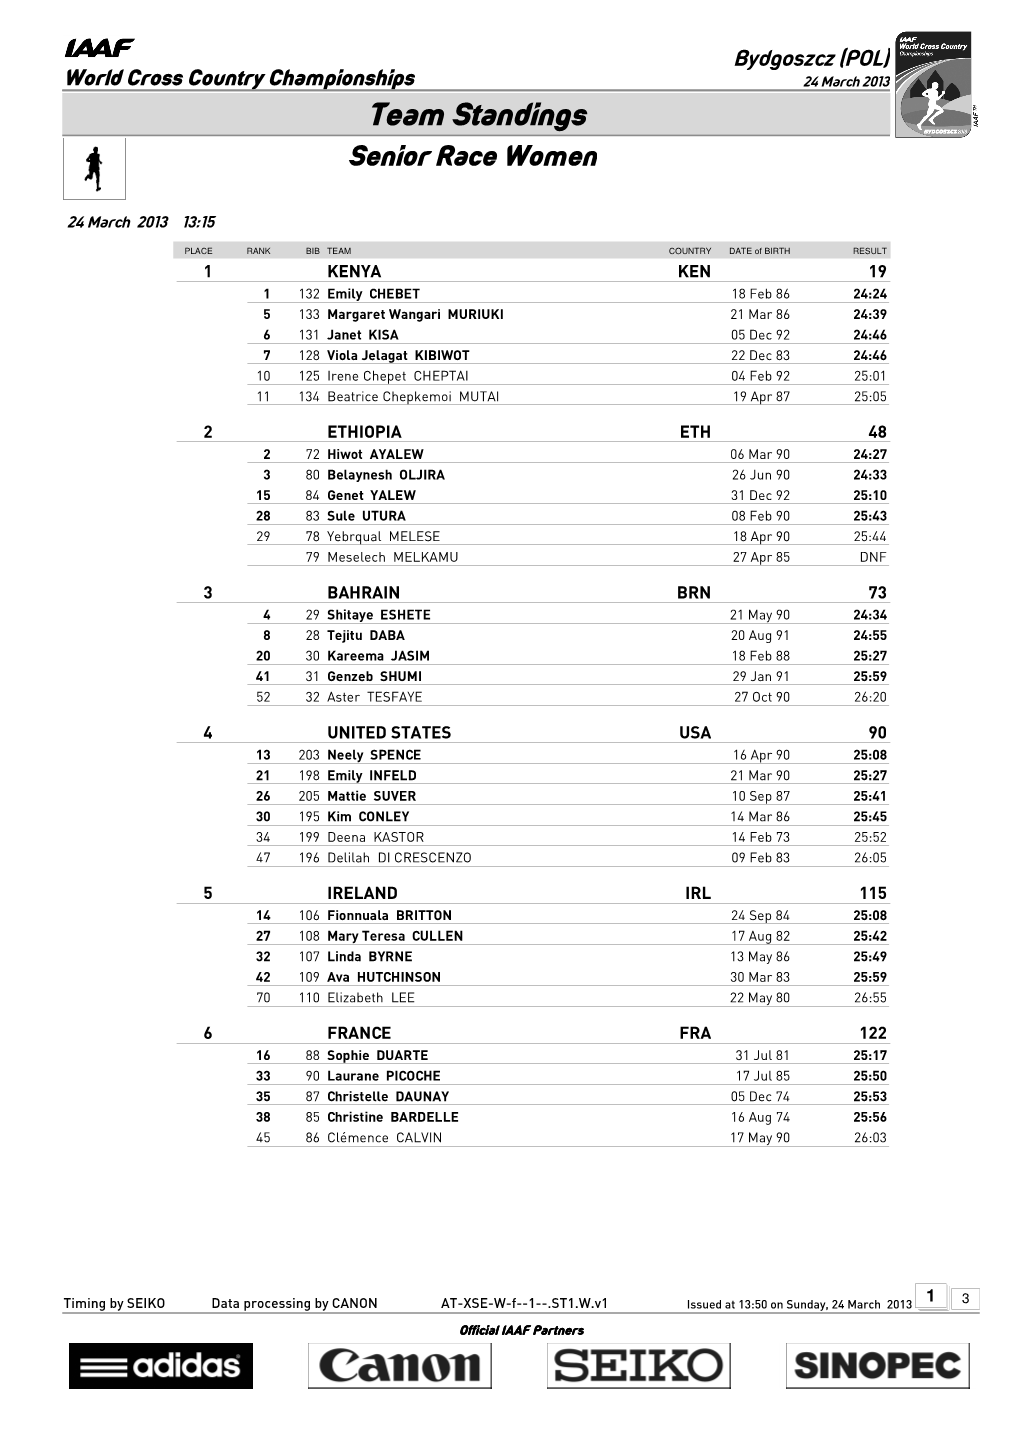 Team Standings Senior Race Women